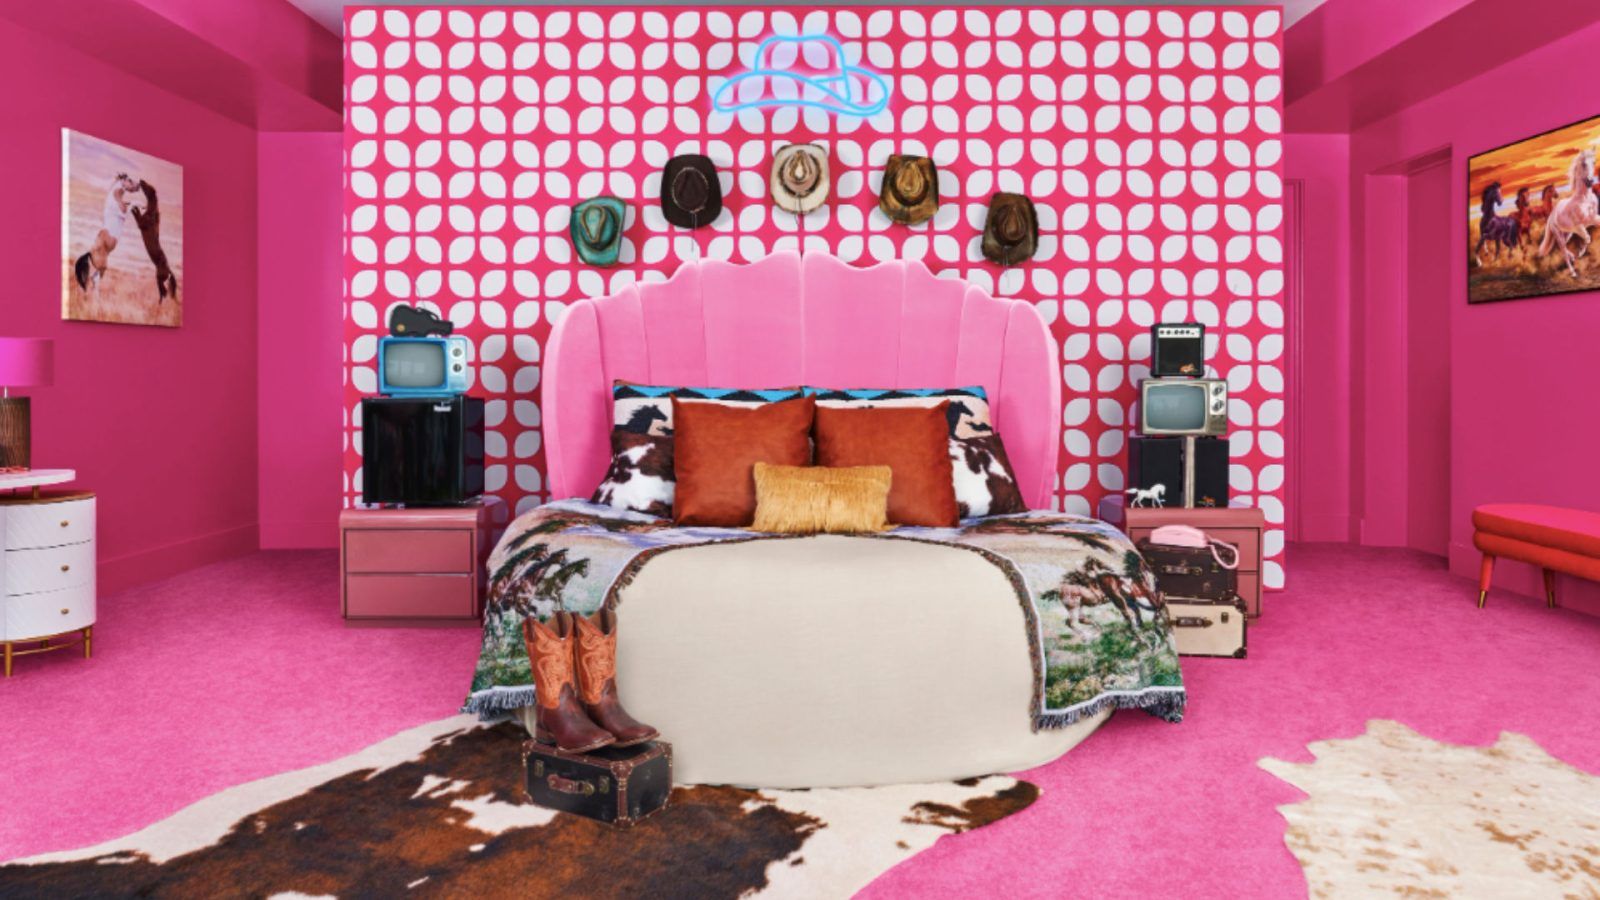  HK Studio Dressing Room Decor for Teen Girls - Pink